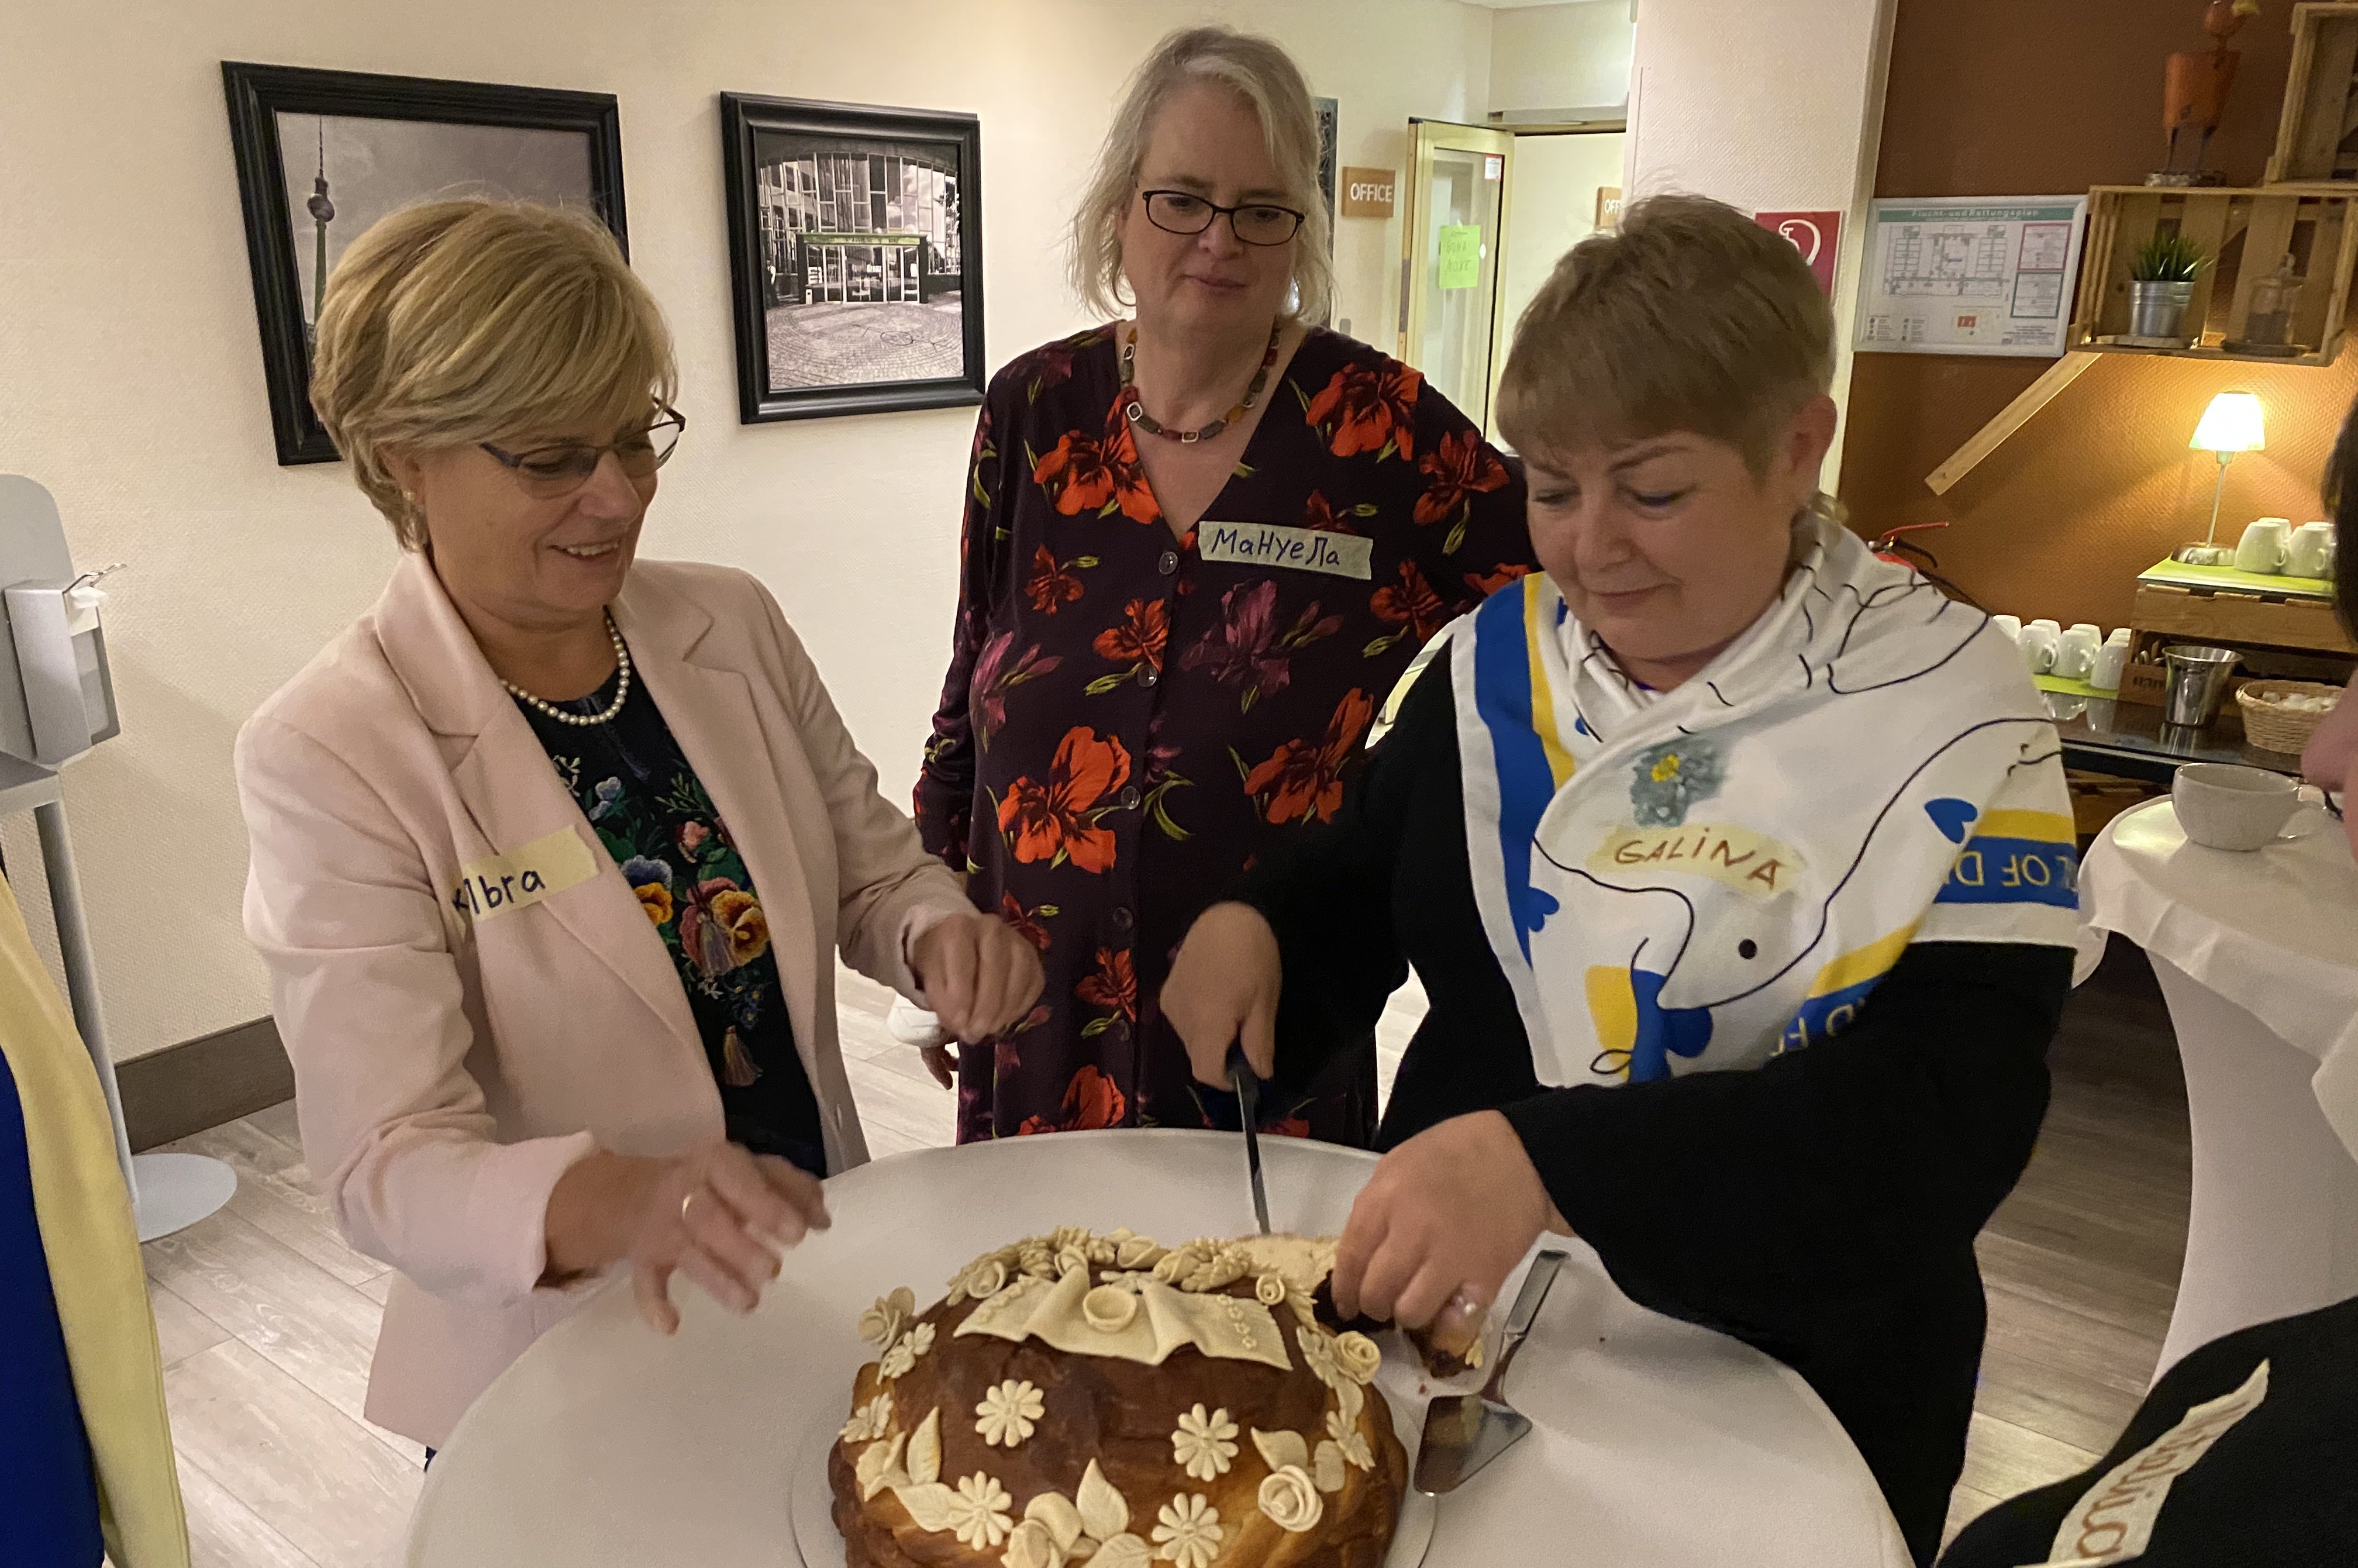 Ein kuchen wird angeschnitten, drei Frauen stehen um einen Stehtisch.